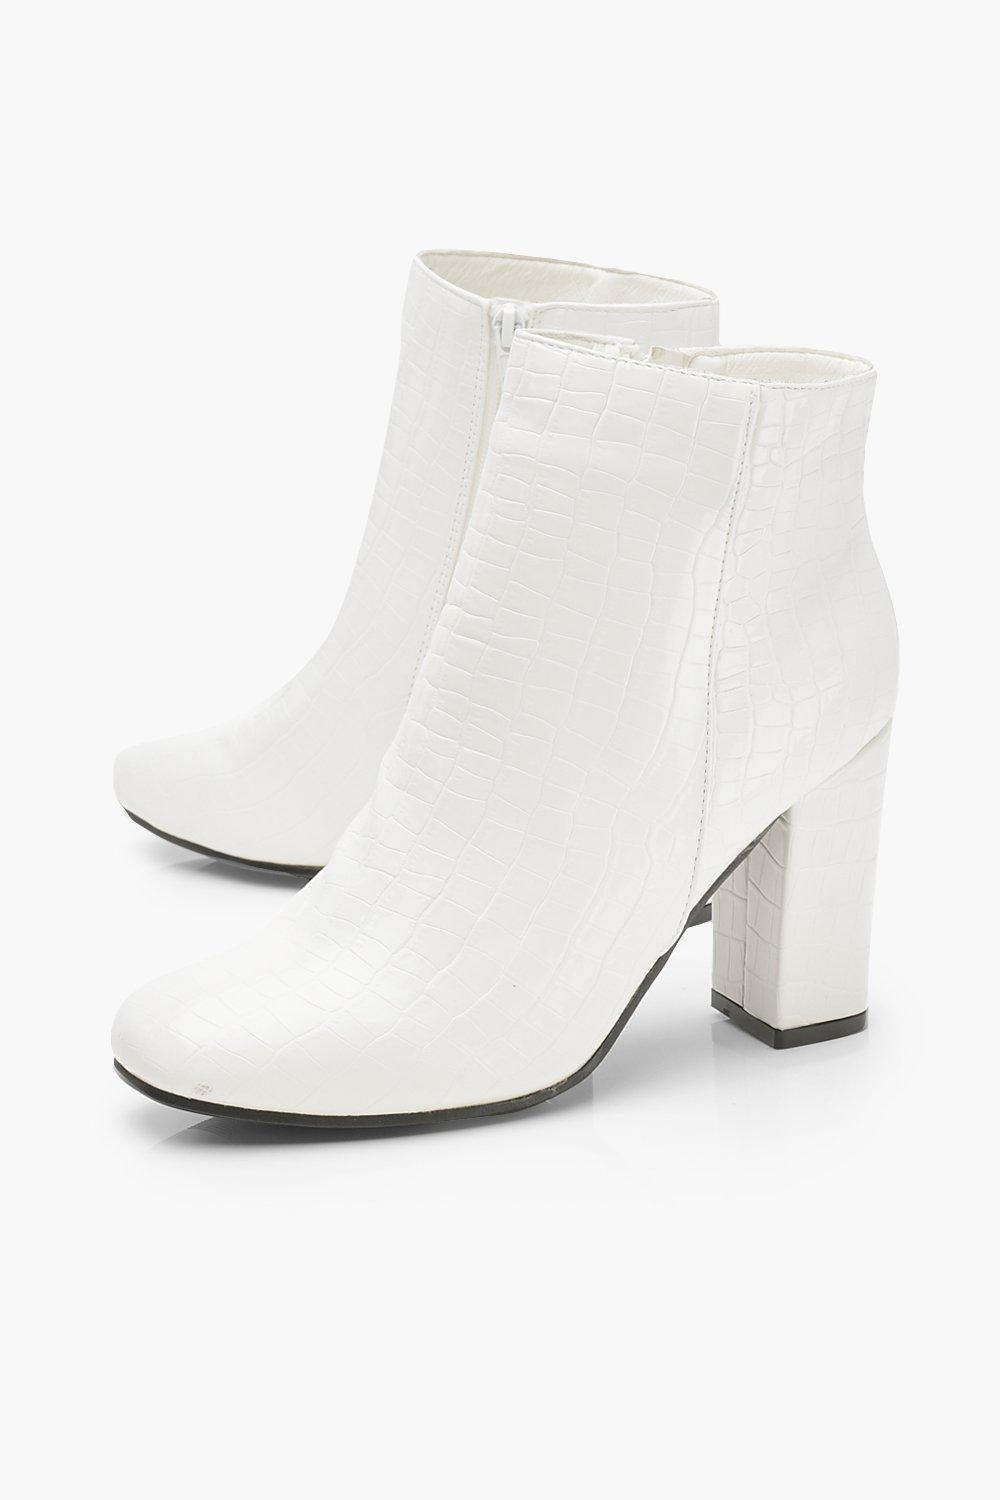 white croc block heel shoe boots